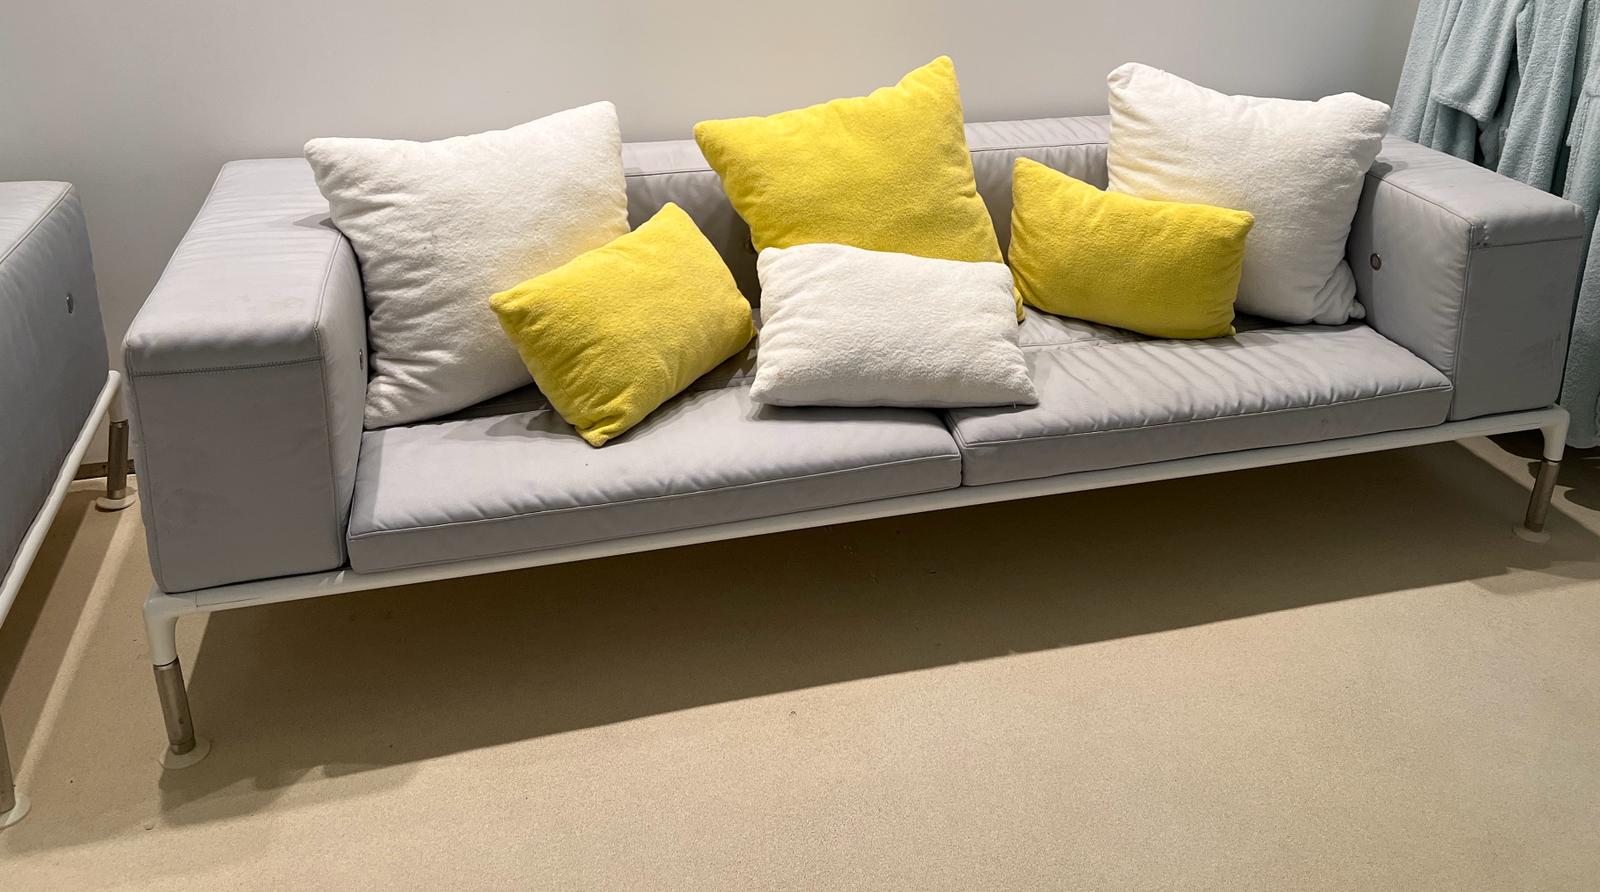 A grey outdoor sofa by B & B Italia outdoor springtime (H73cm W260cm D97cm)